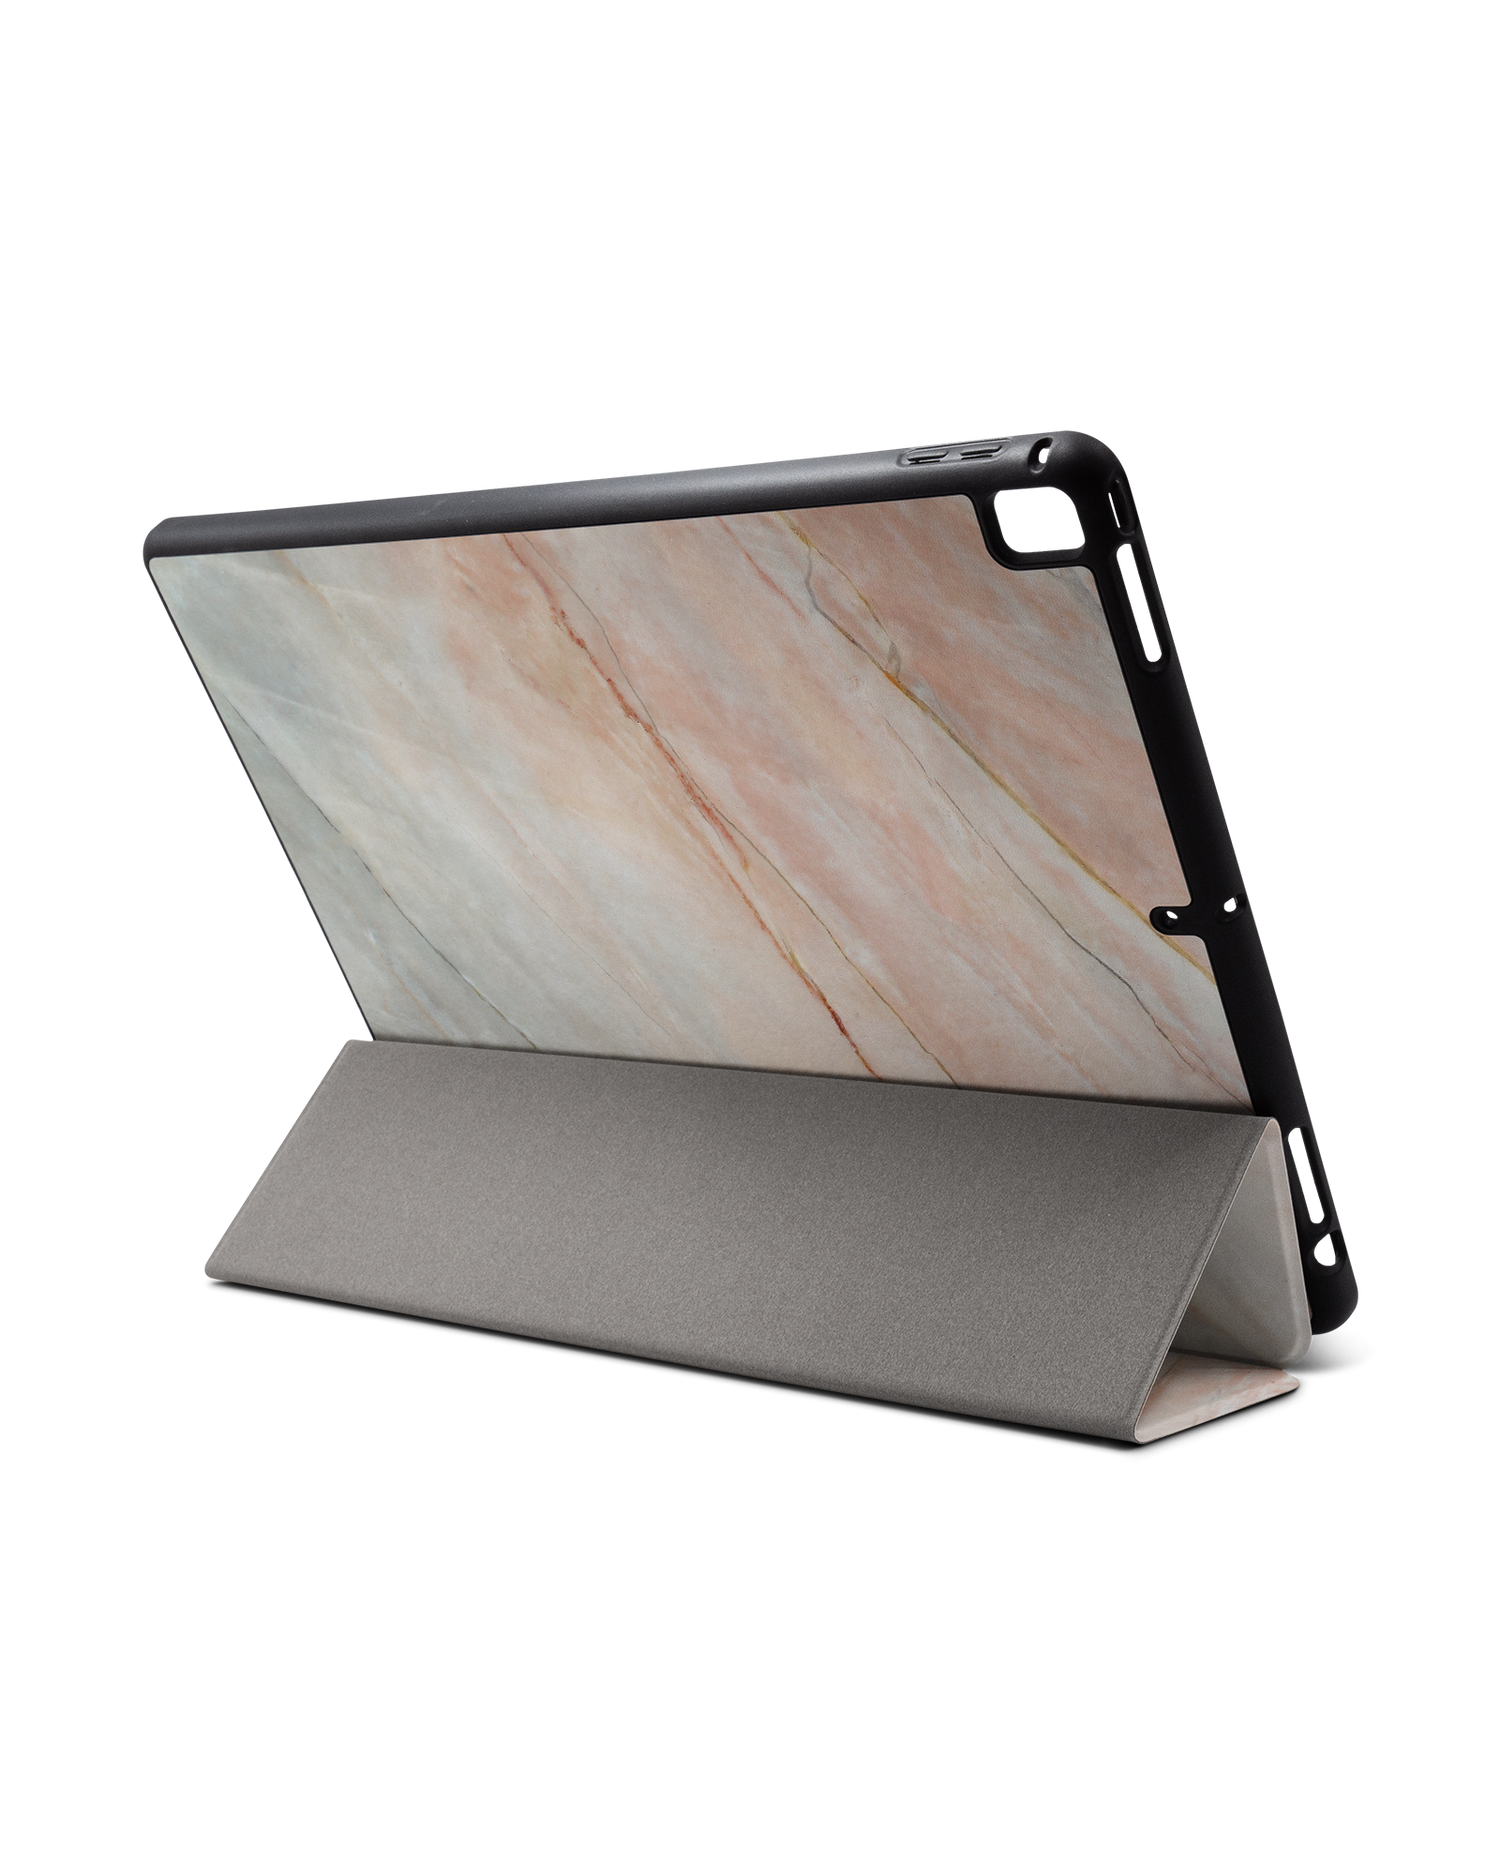 Mother of Pearl Marble iPad Hülle mit Stifthalter für Apple iPad Pro 2 12.9'' (2017): Aufgestellt im Querformat von hinten